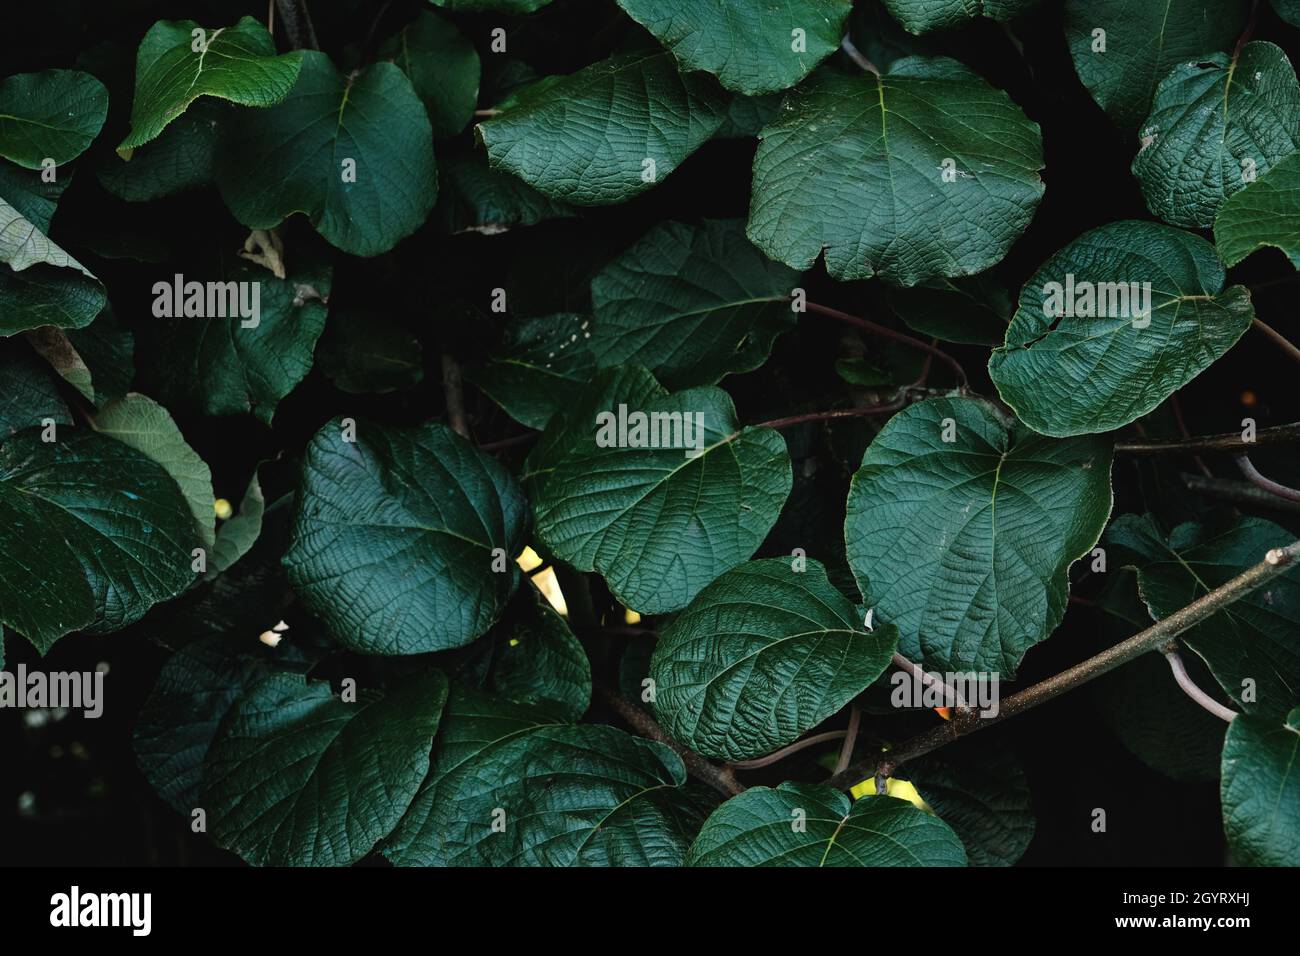 Actinidia deliciosa, fuzzy kiwifruit vine dark green foliage, selective focus Stock Photo